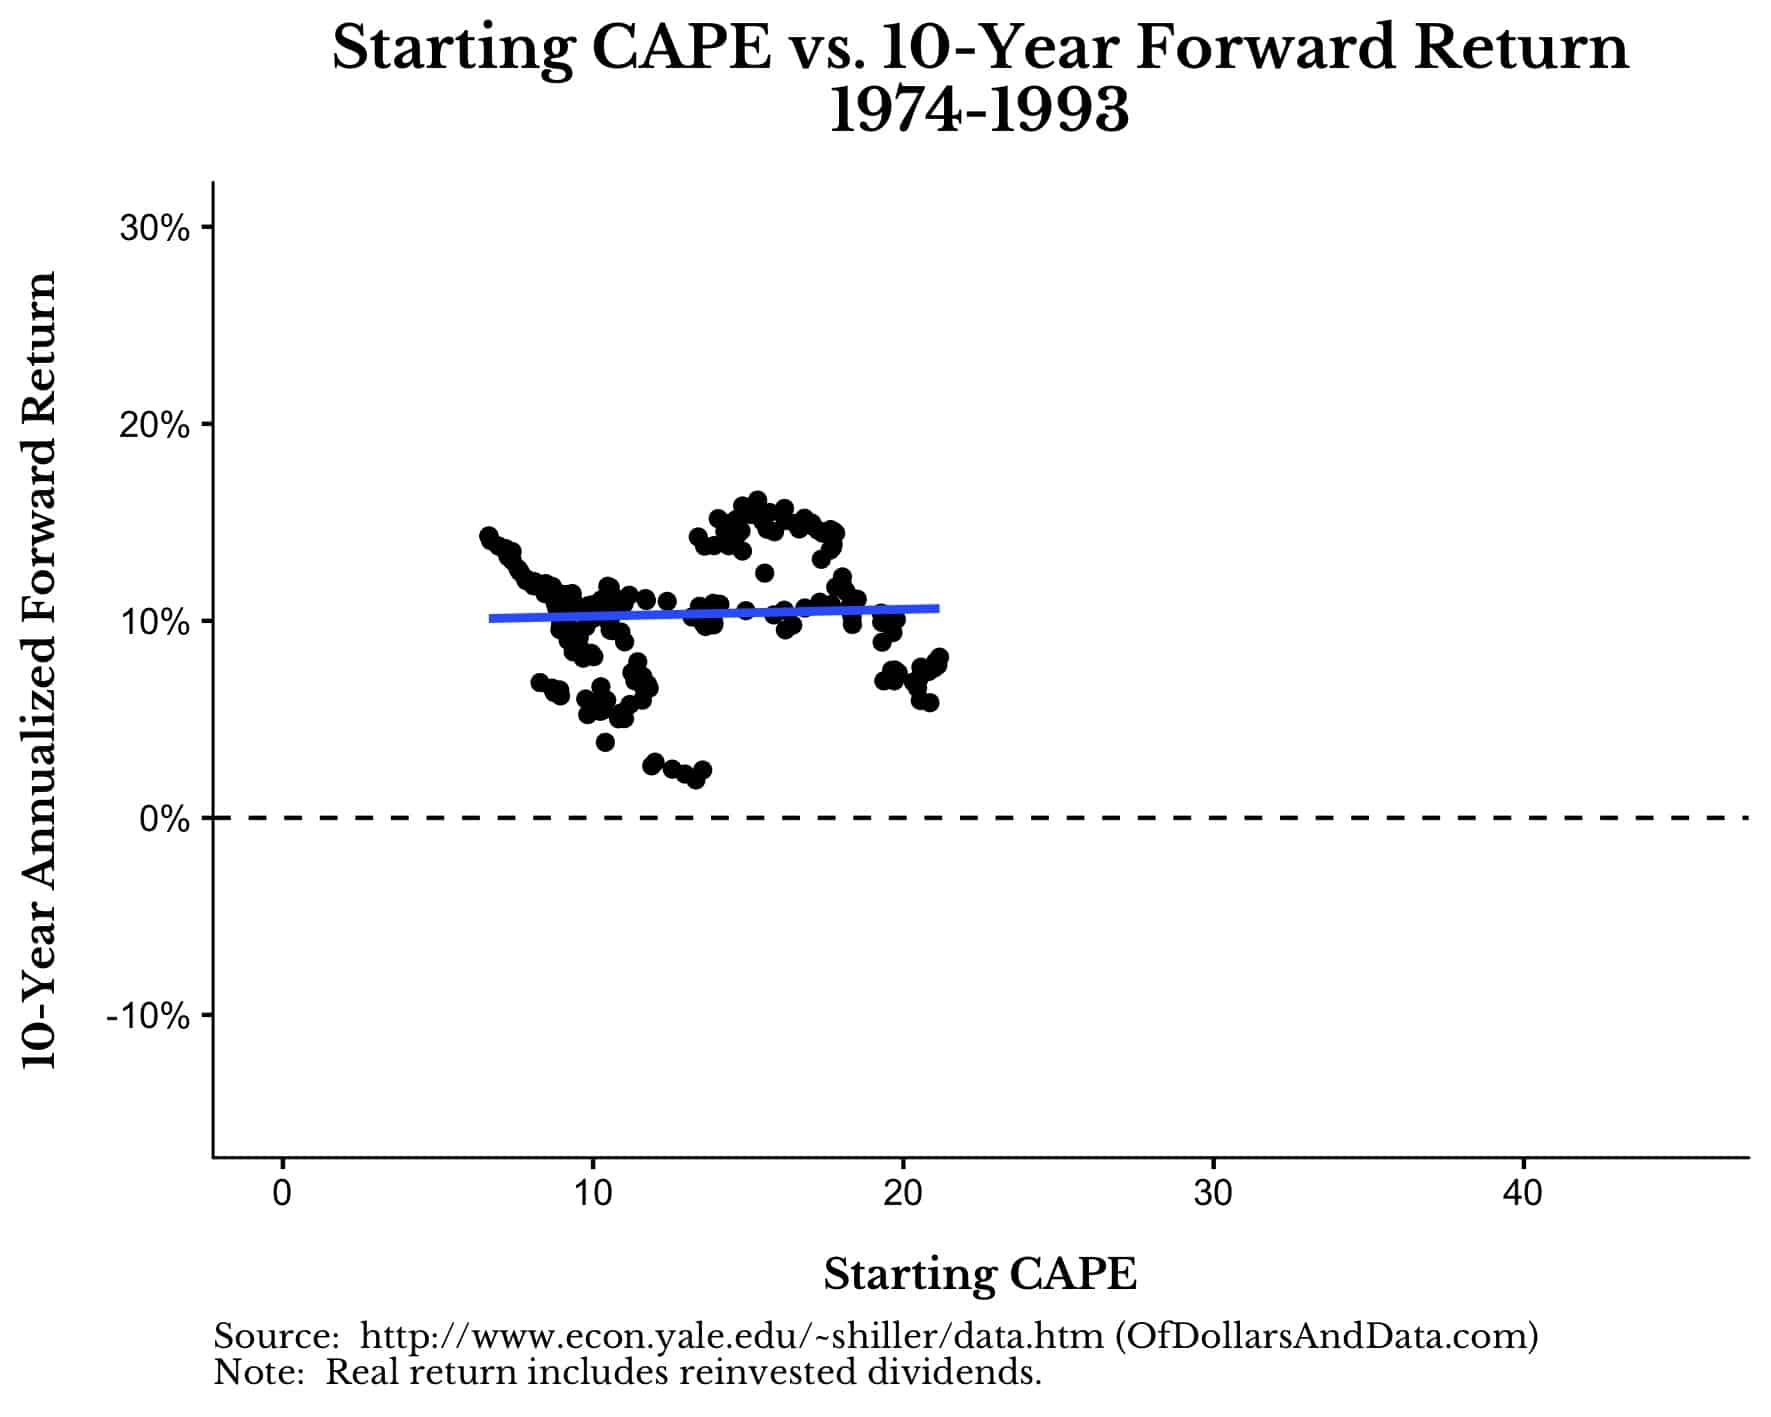 Starting CAPE vs 10-Year Forward Return for US Stocks, 1974-1993